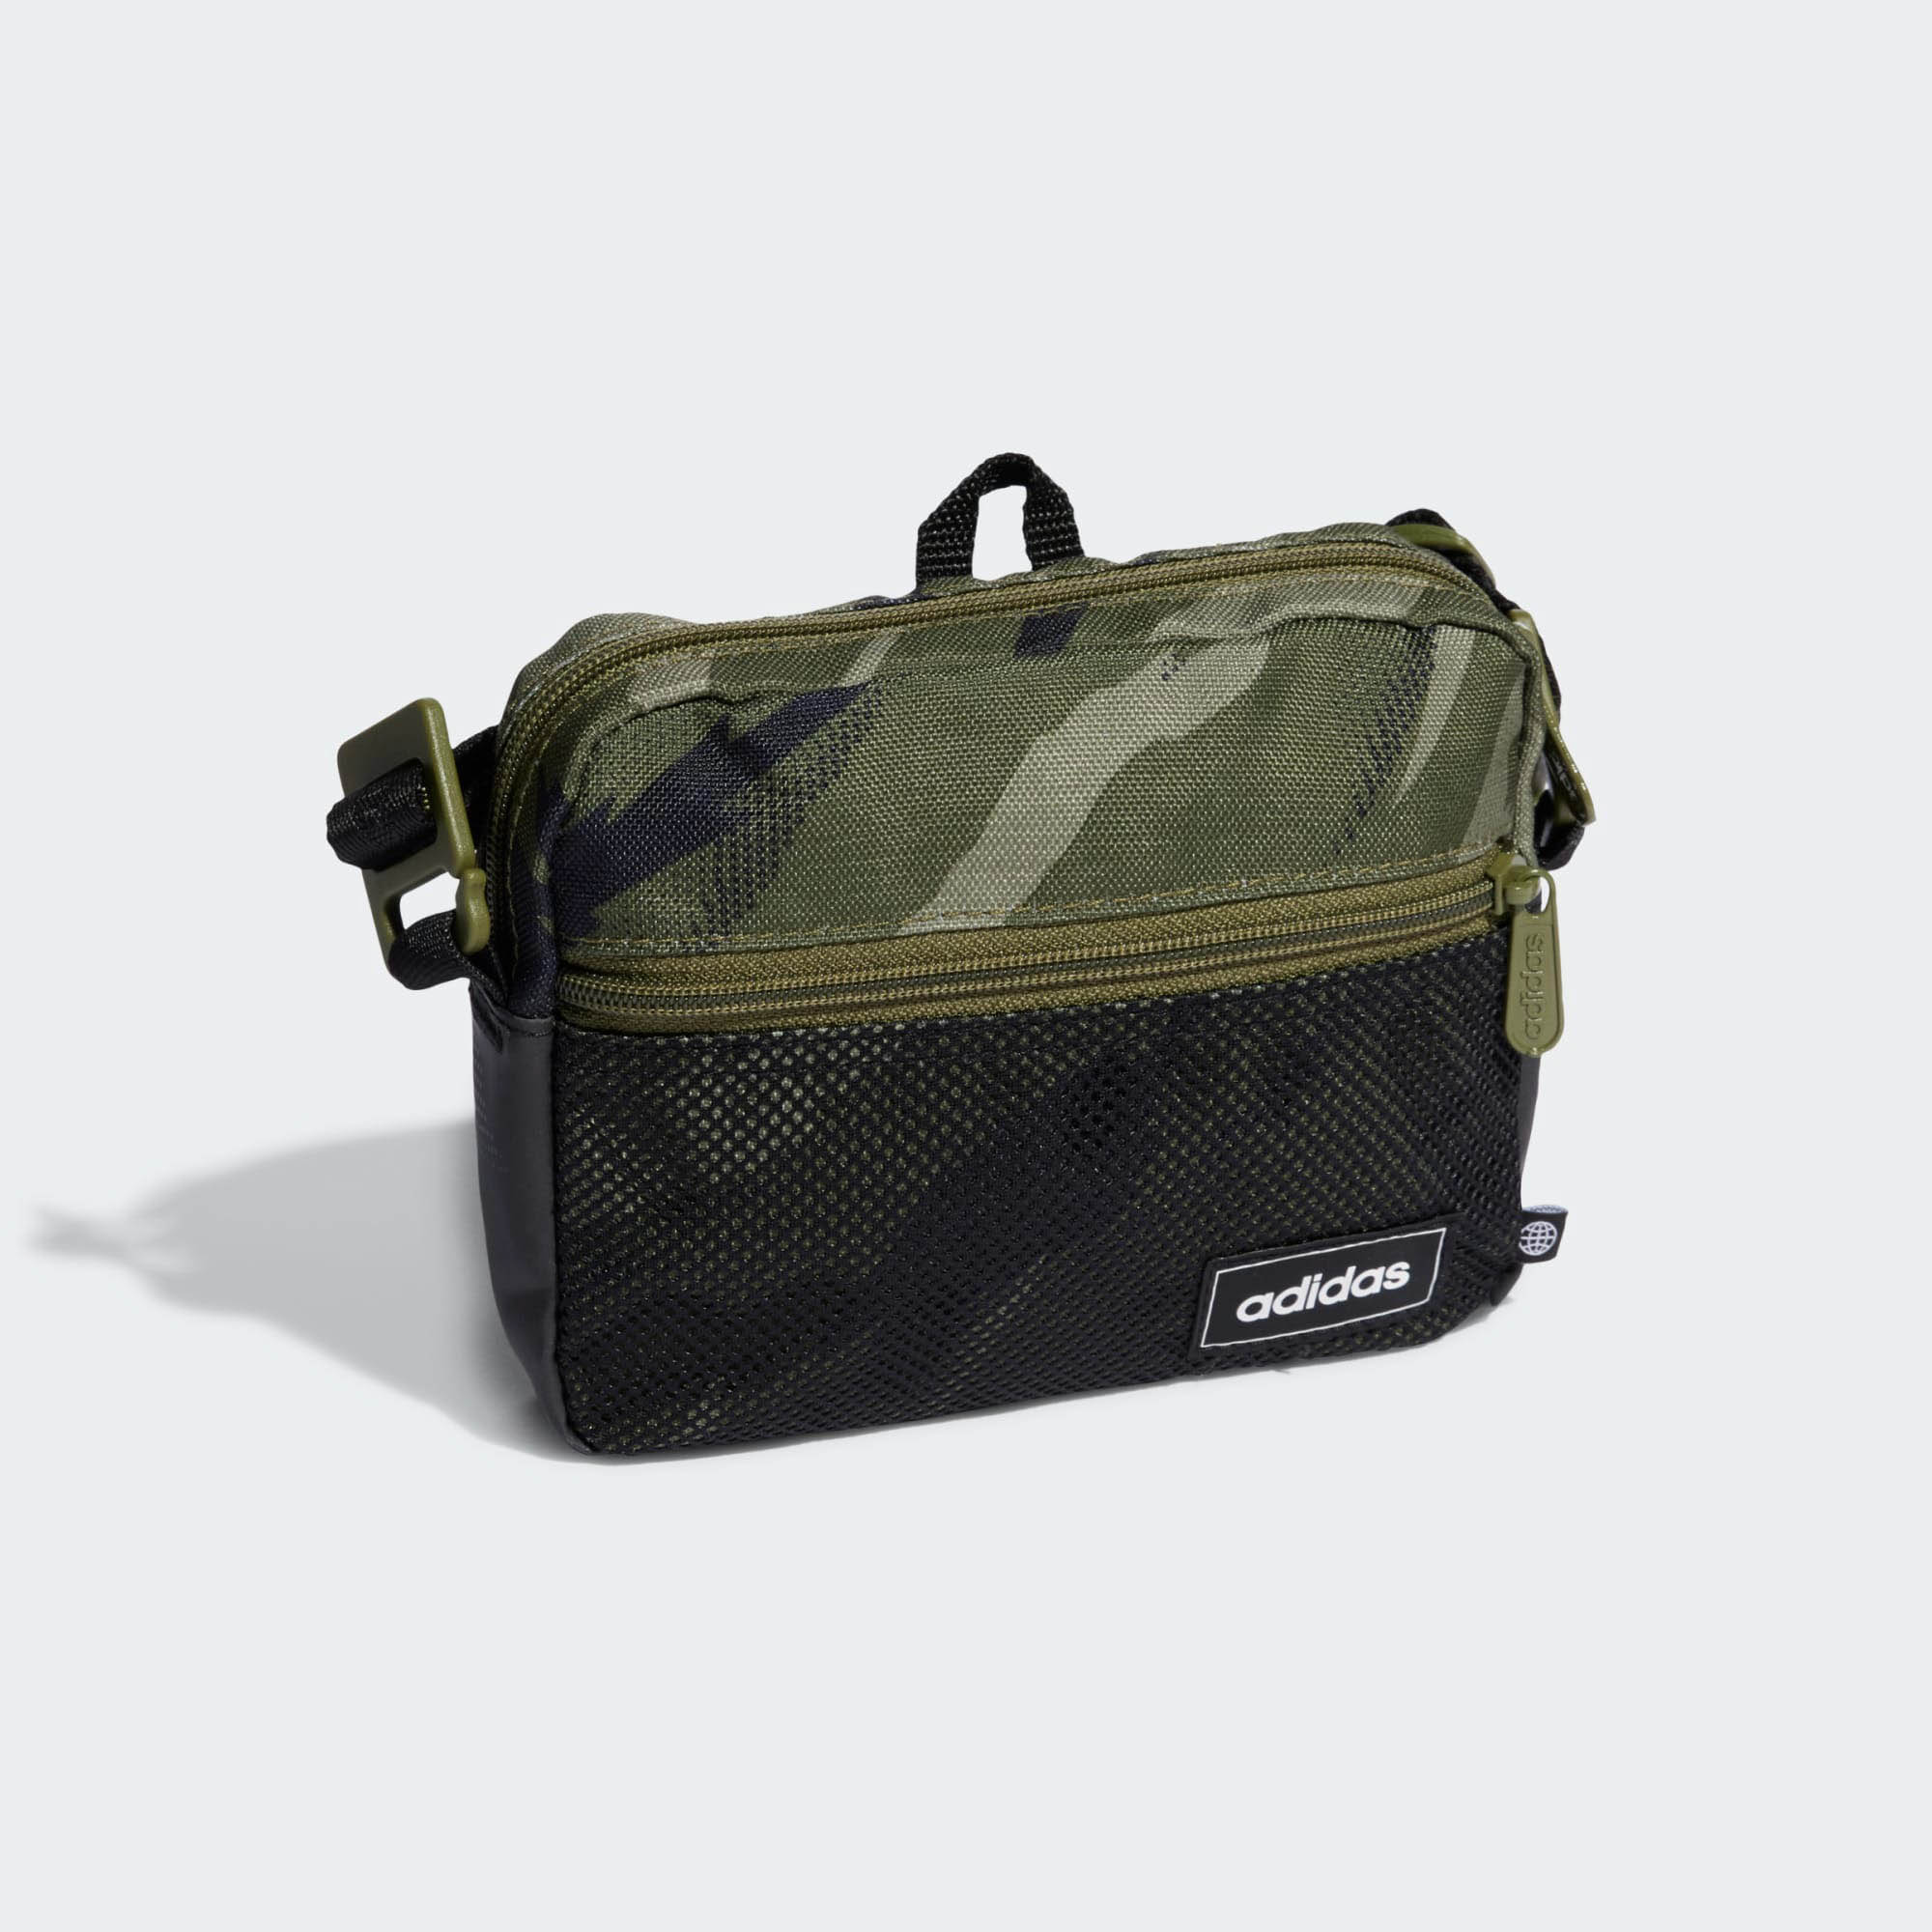 Túi Đeo Chéo Adidas Classics Organizer Bag HC4779 Màu Xanh Green